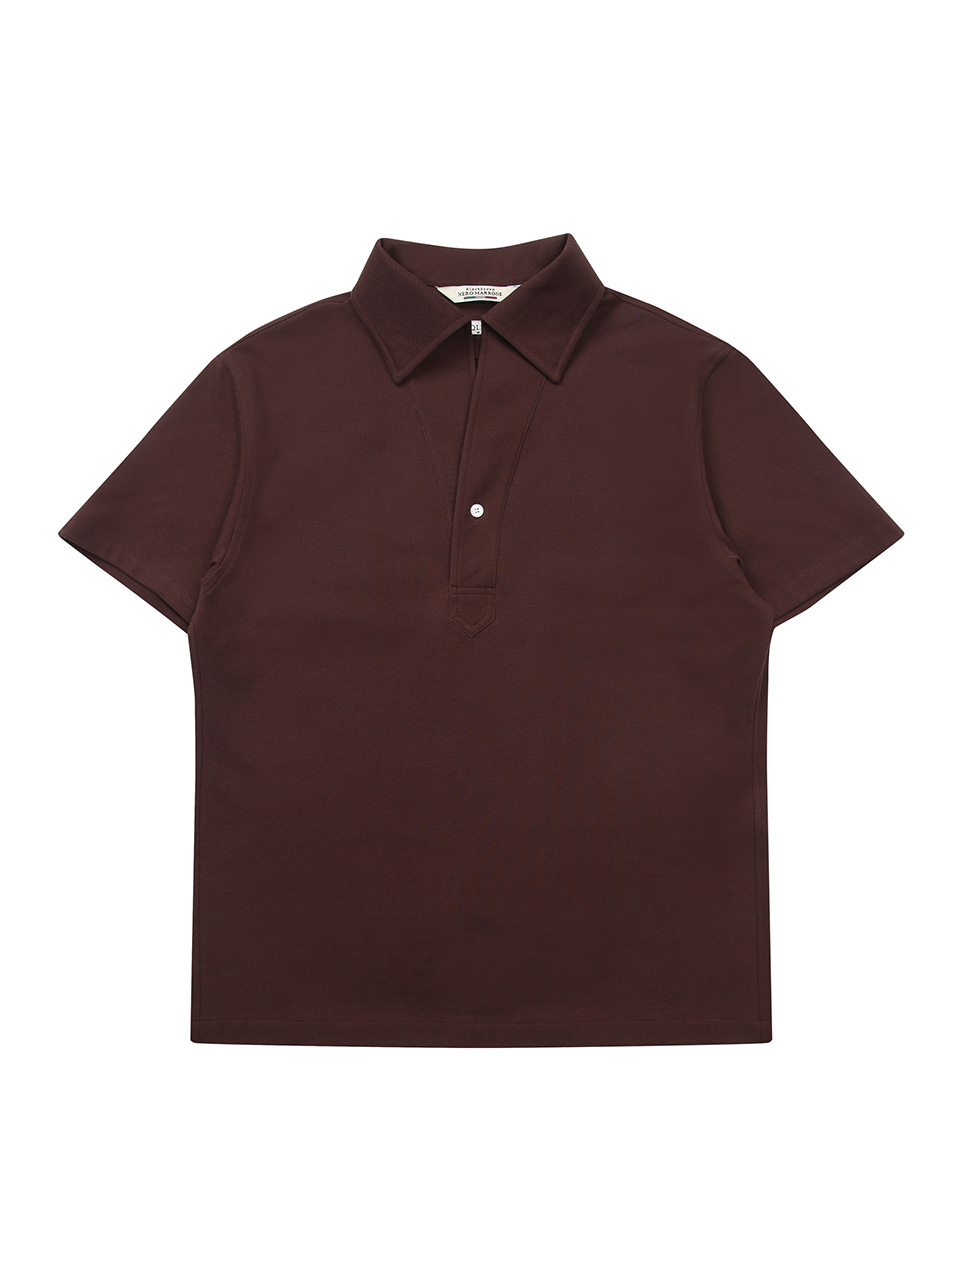 PK Silket 1-Button Polo Shirt Brown 01BW블랙브라운